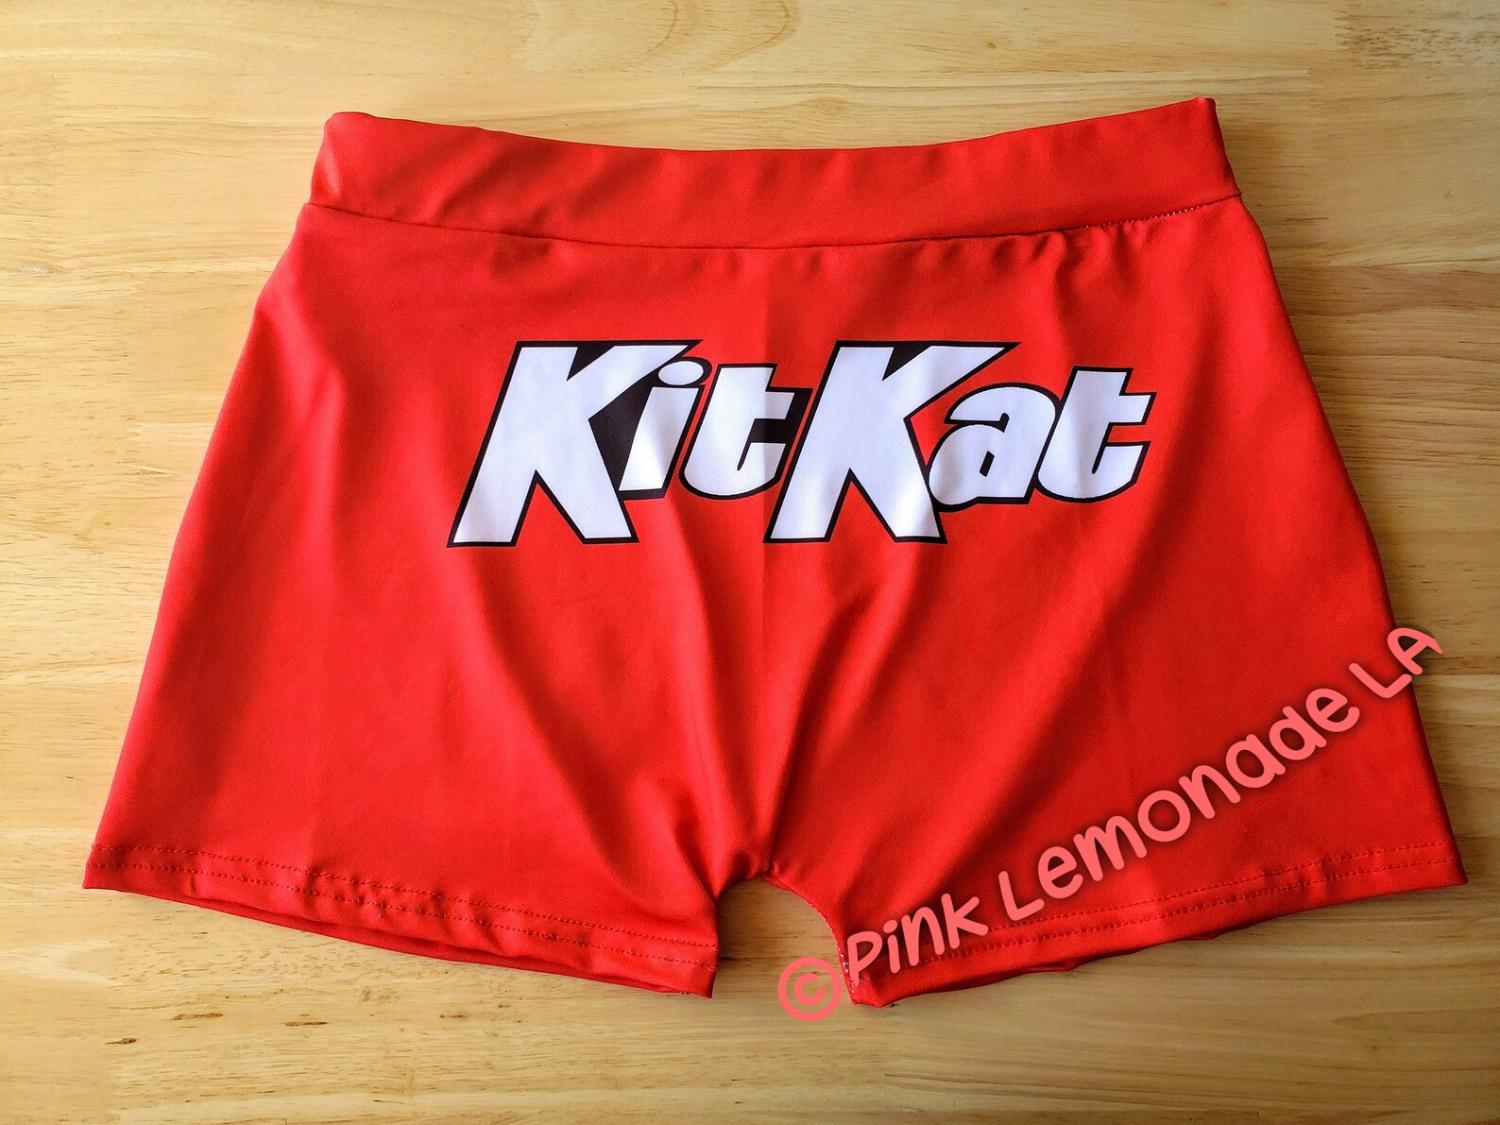 Snack Booty Shorts - Kit Kat stretchy shorts